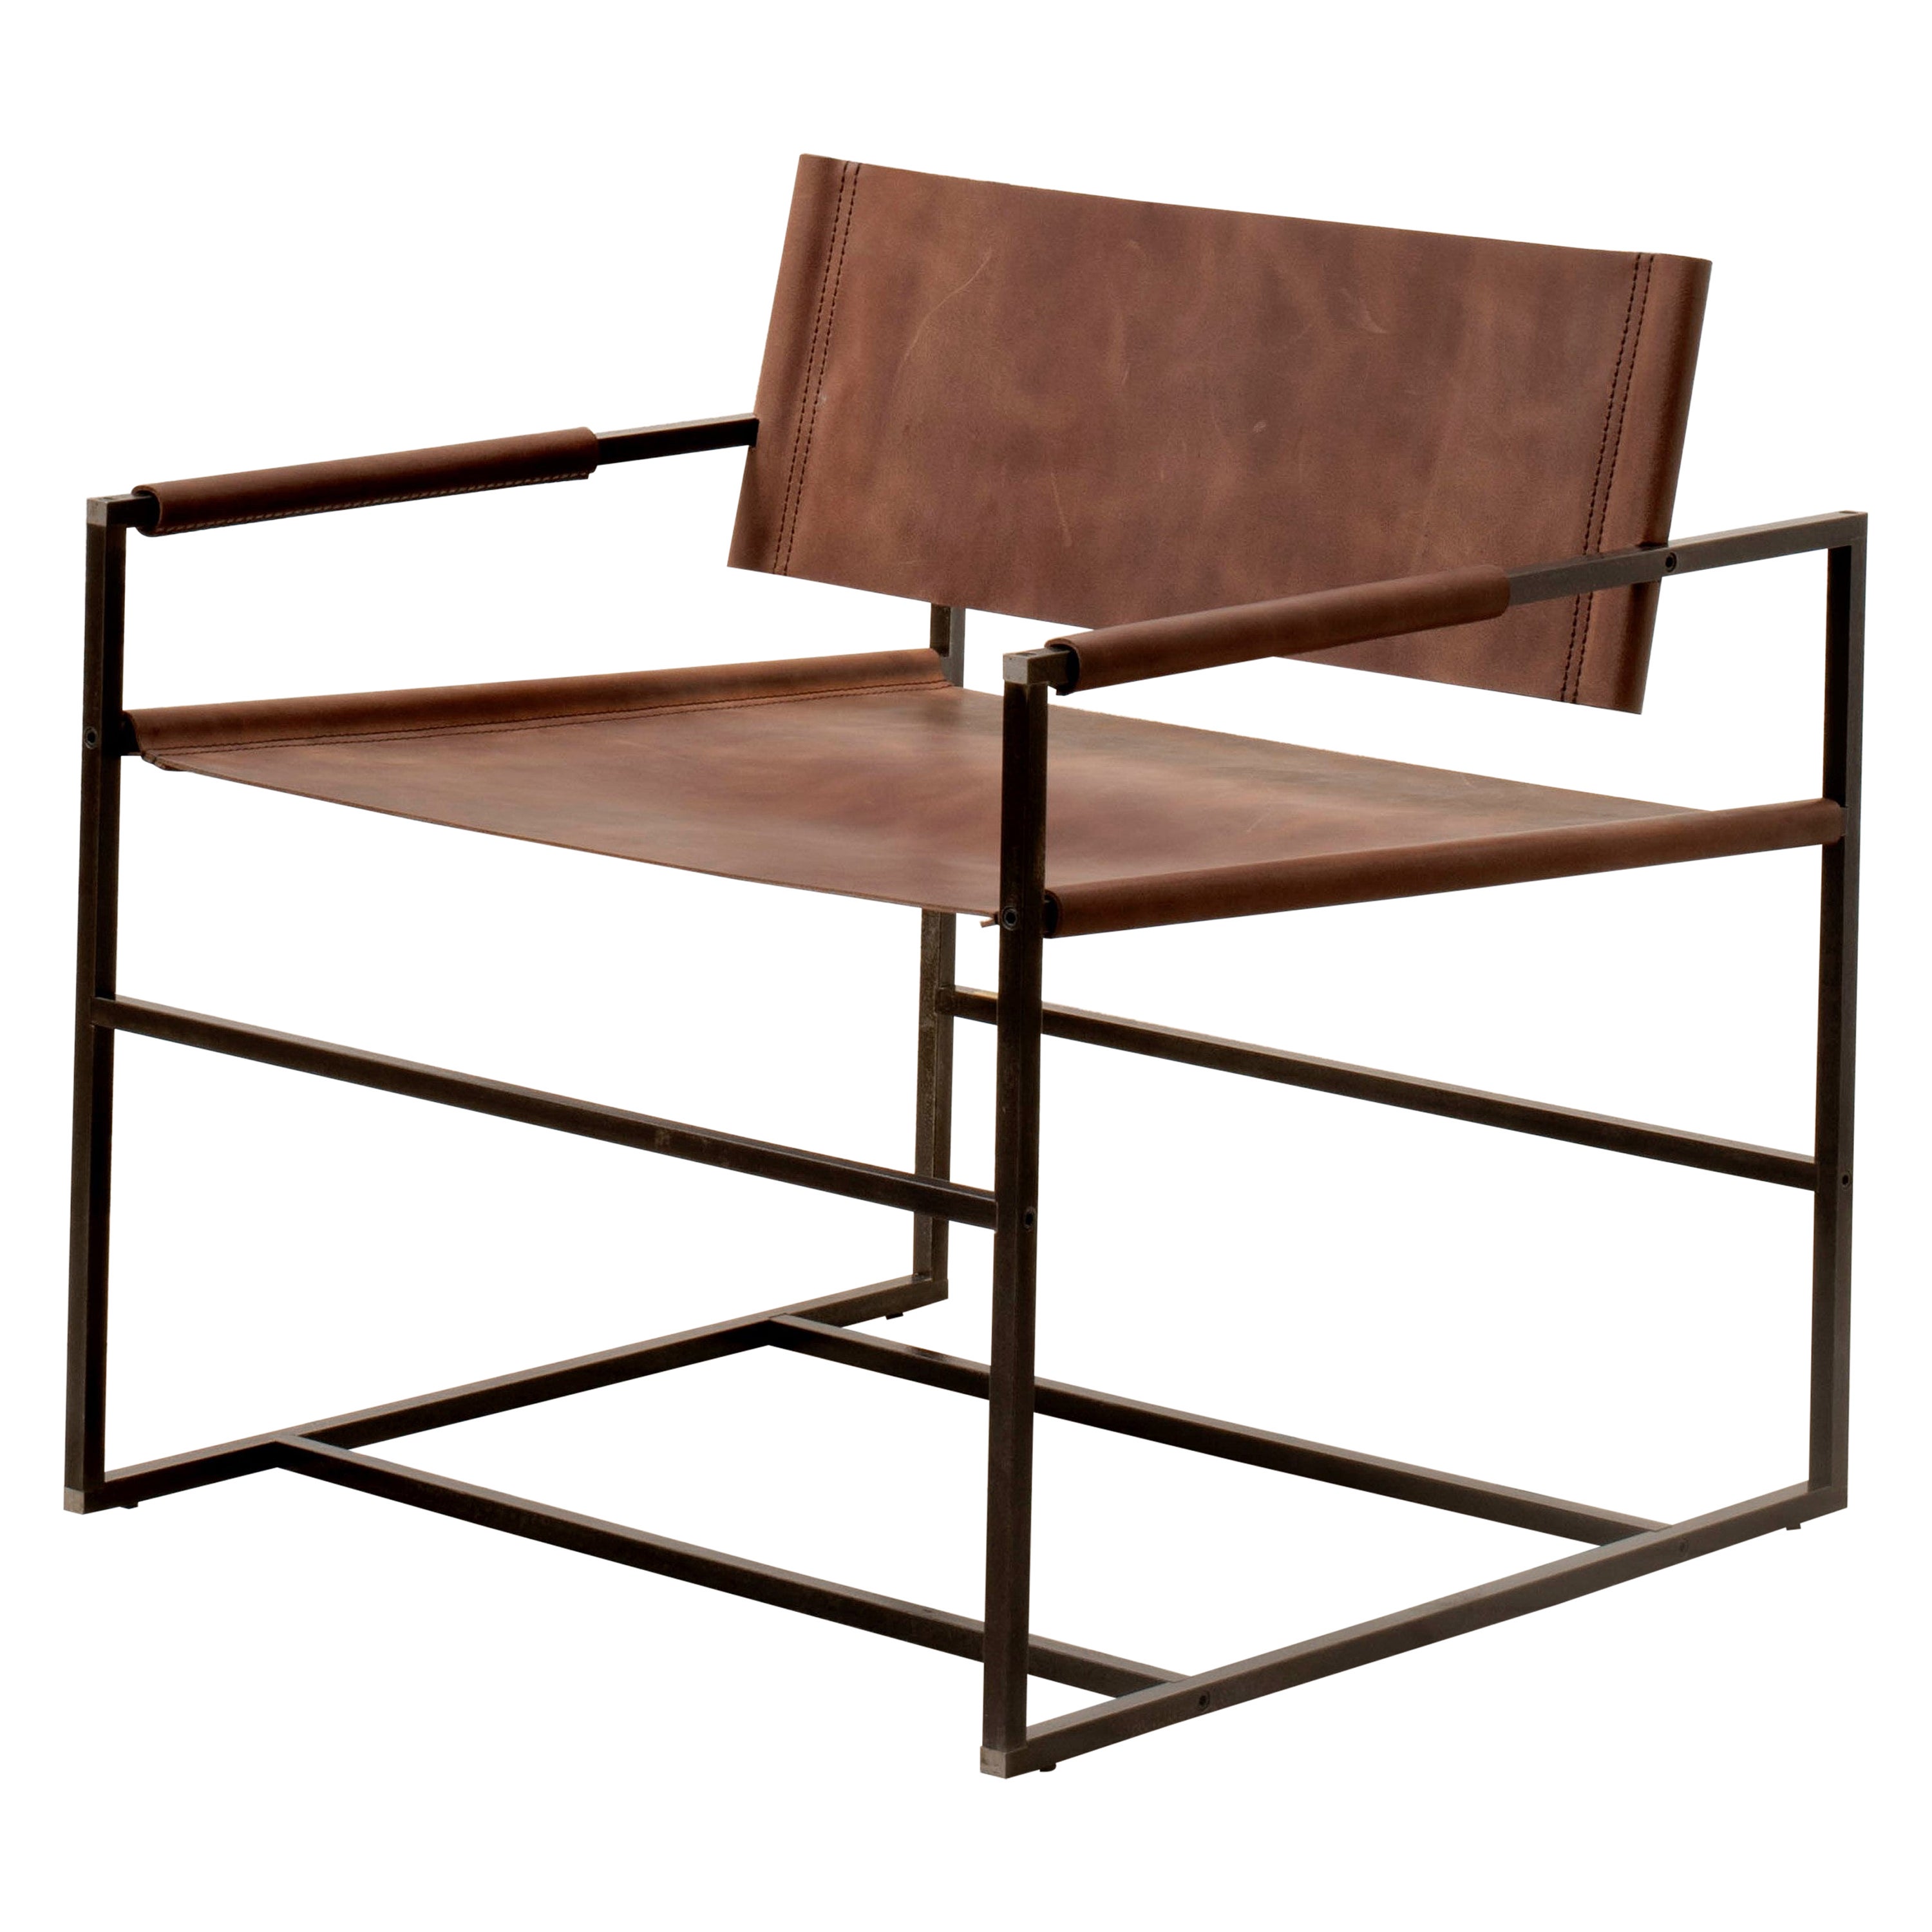  Sessel_01 ֻ minimalistischer Sessel, handgefertigt aus Leder und Stahl.  im Angebot